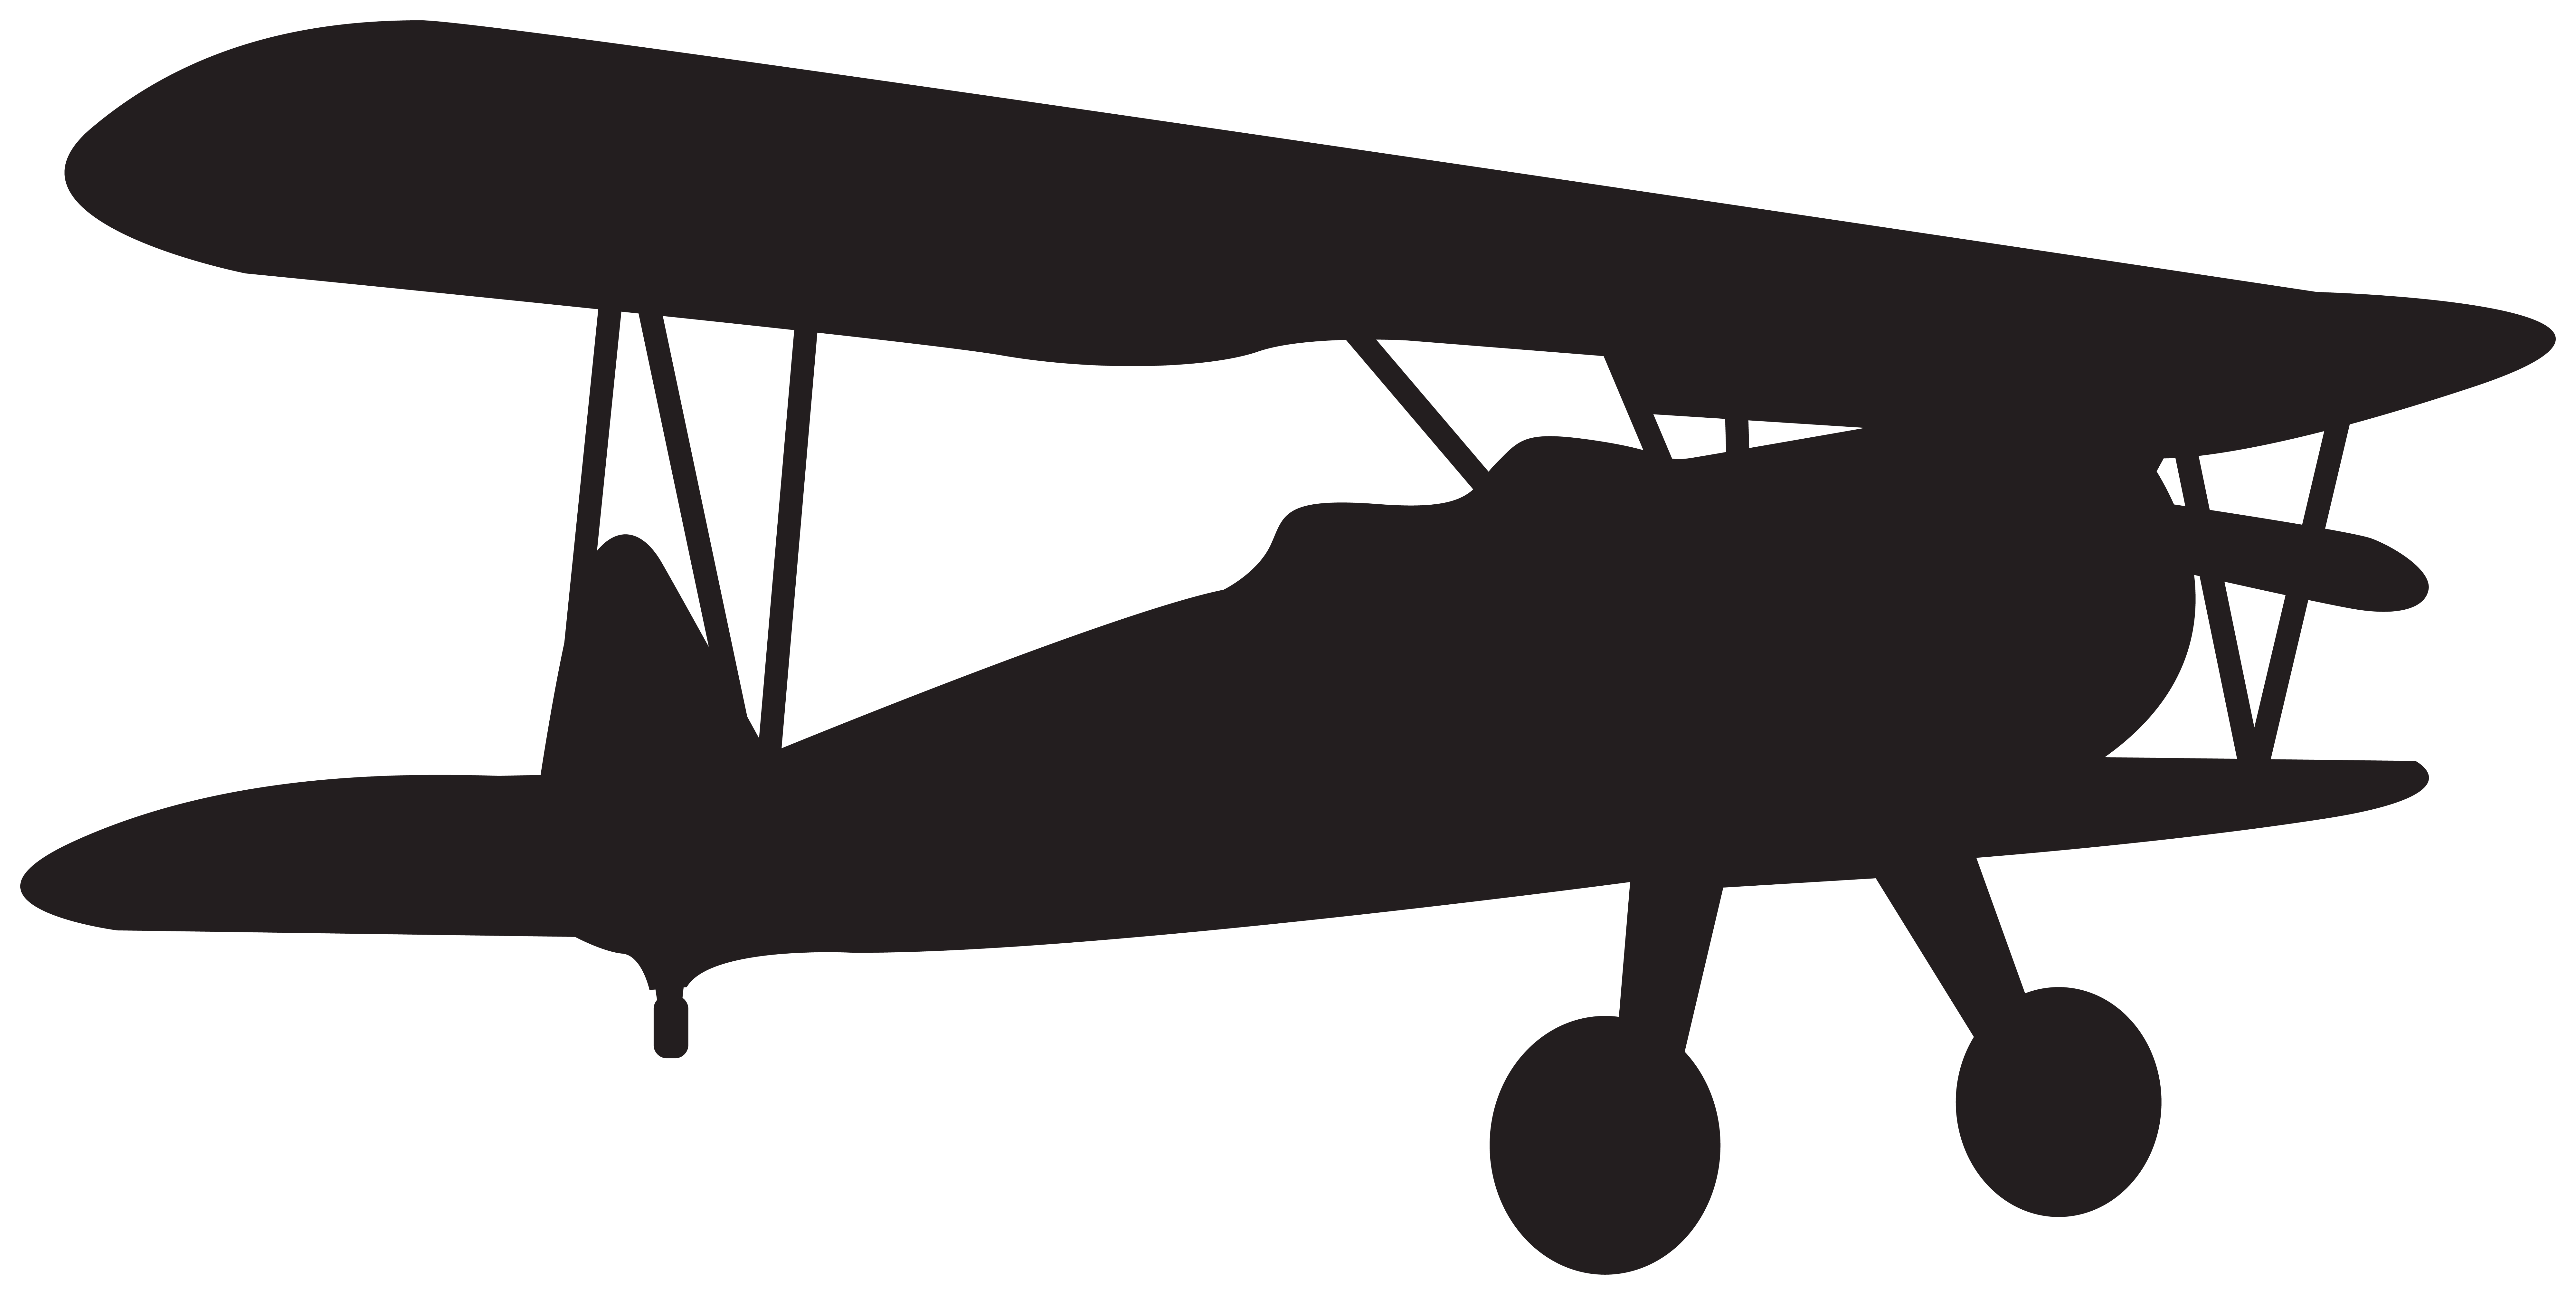 Small plane silhouette.